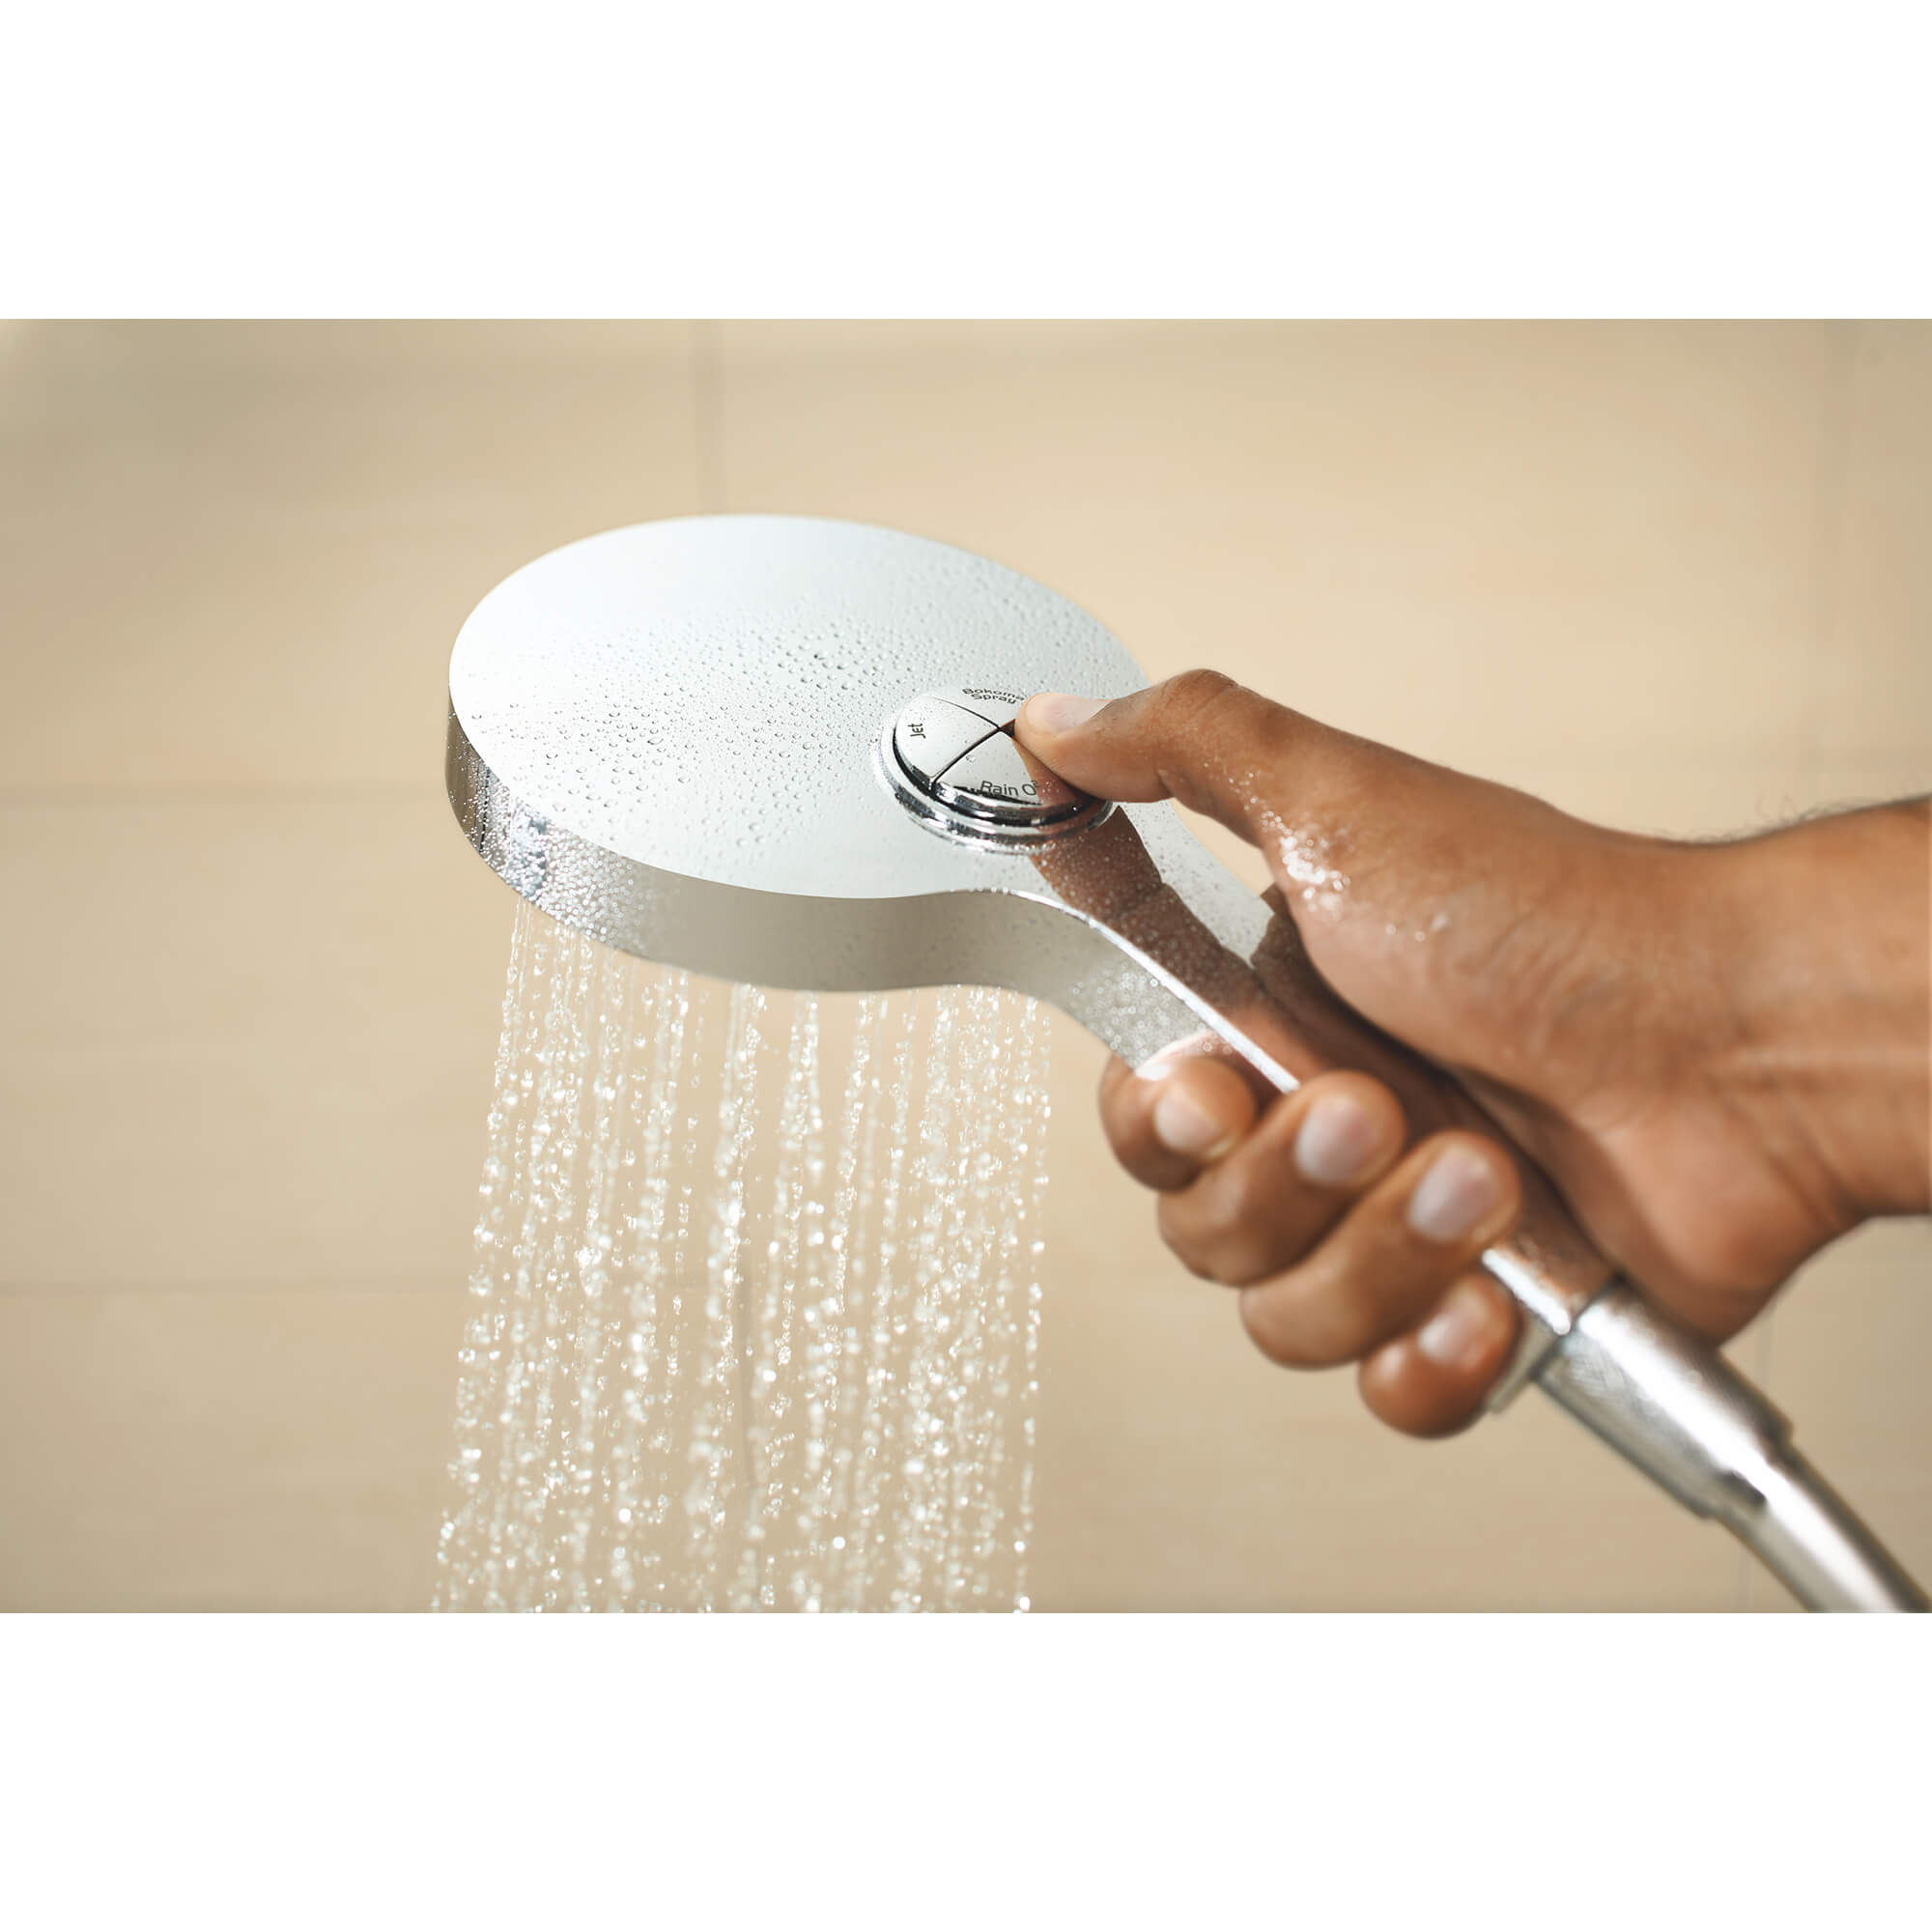 130 Hand Shower - 4 Sprays, 2.5 gpm